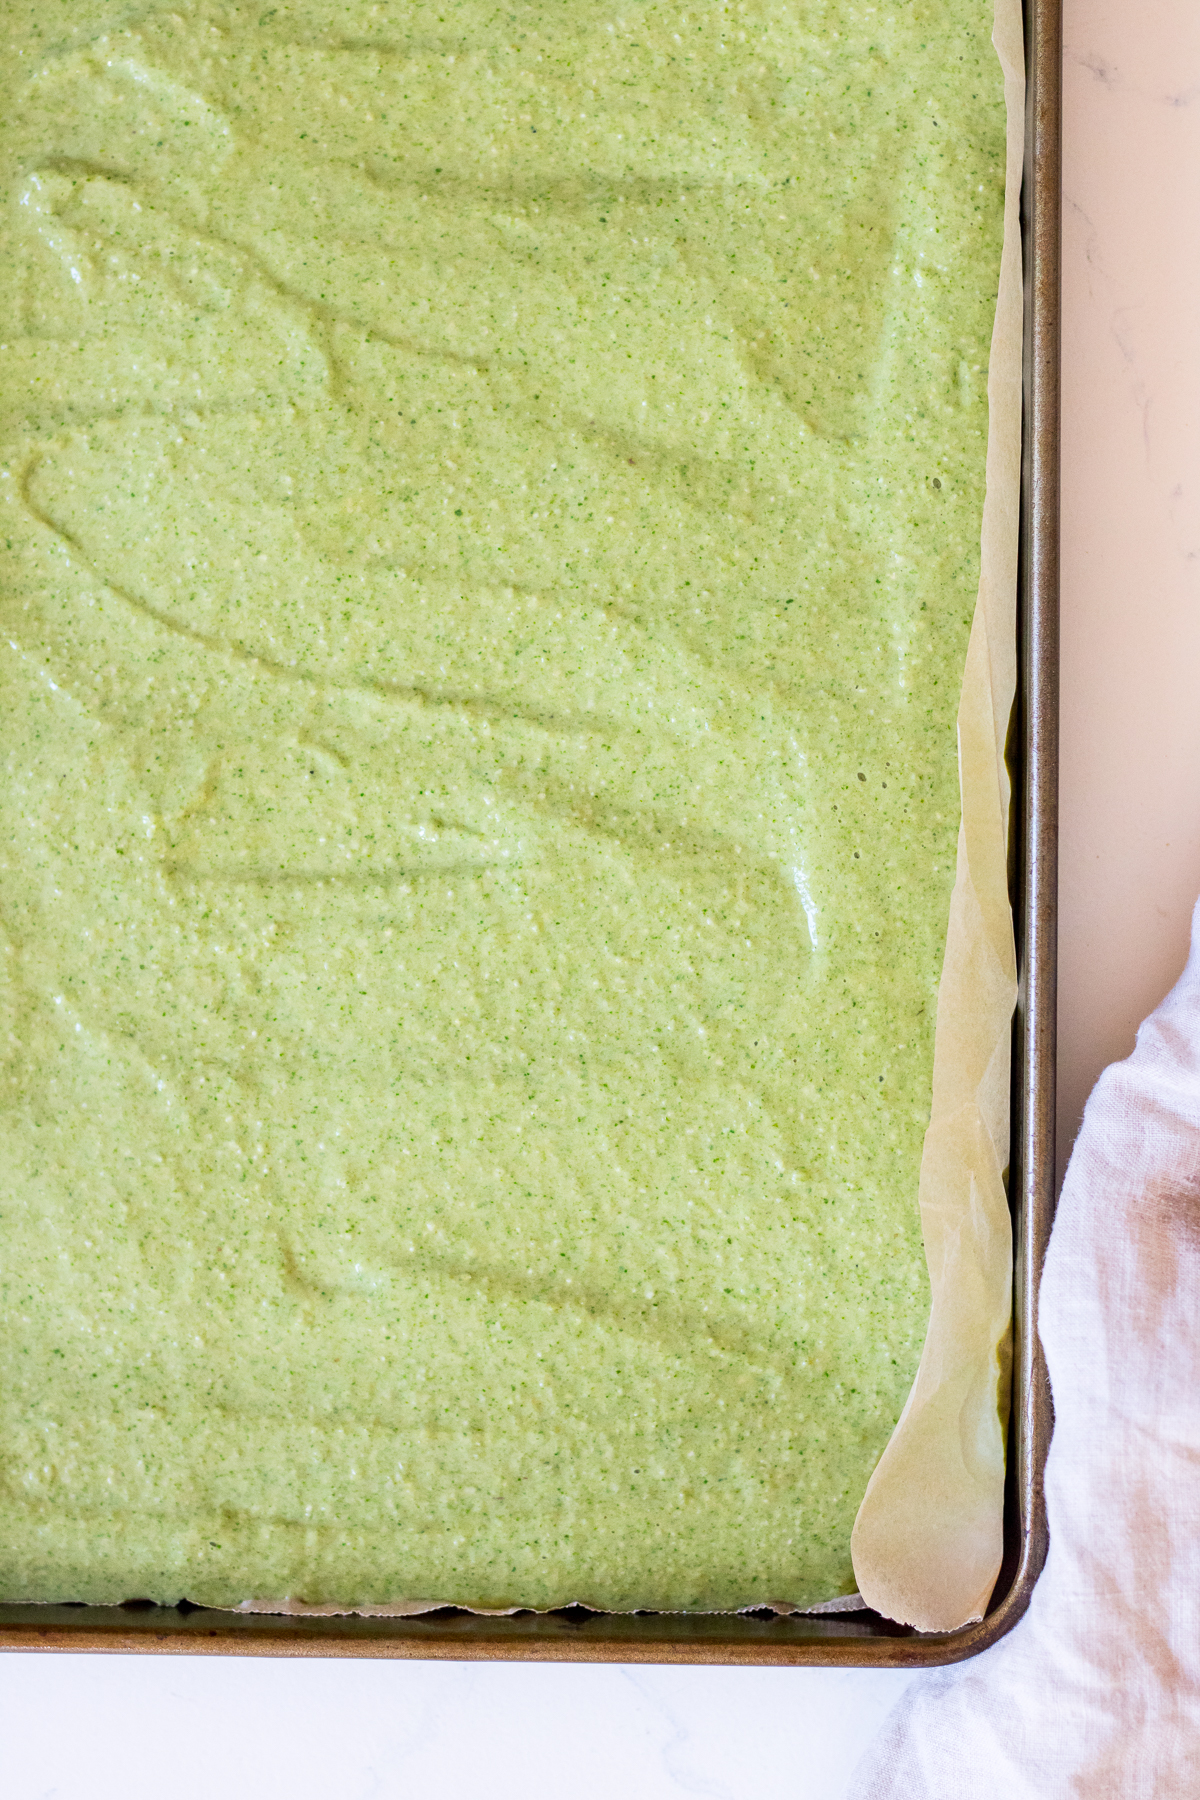 Image of green pancake batter in a rectangular sheet pan